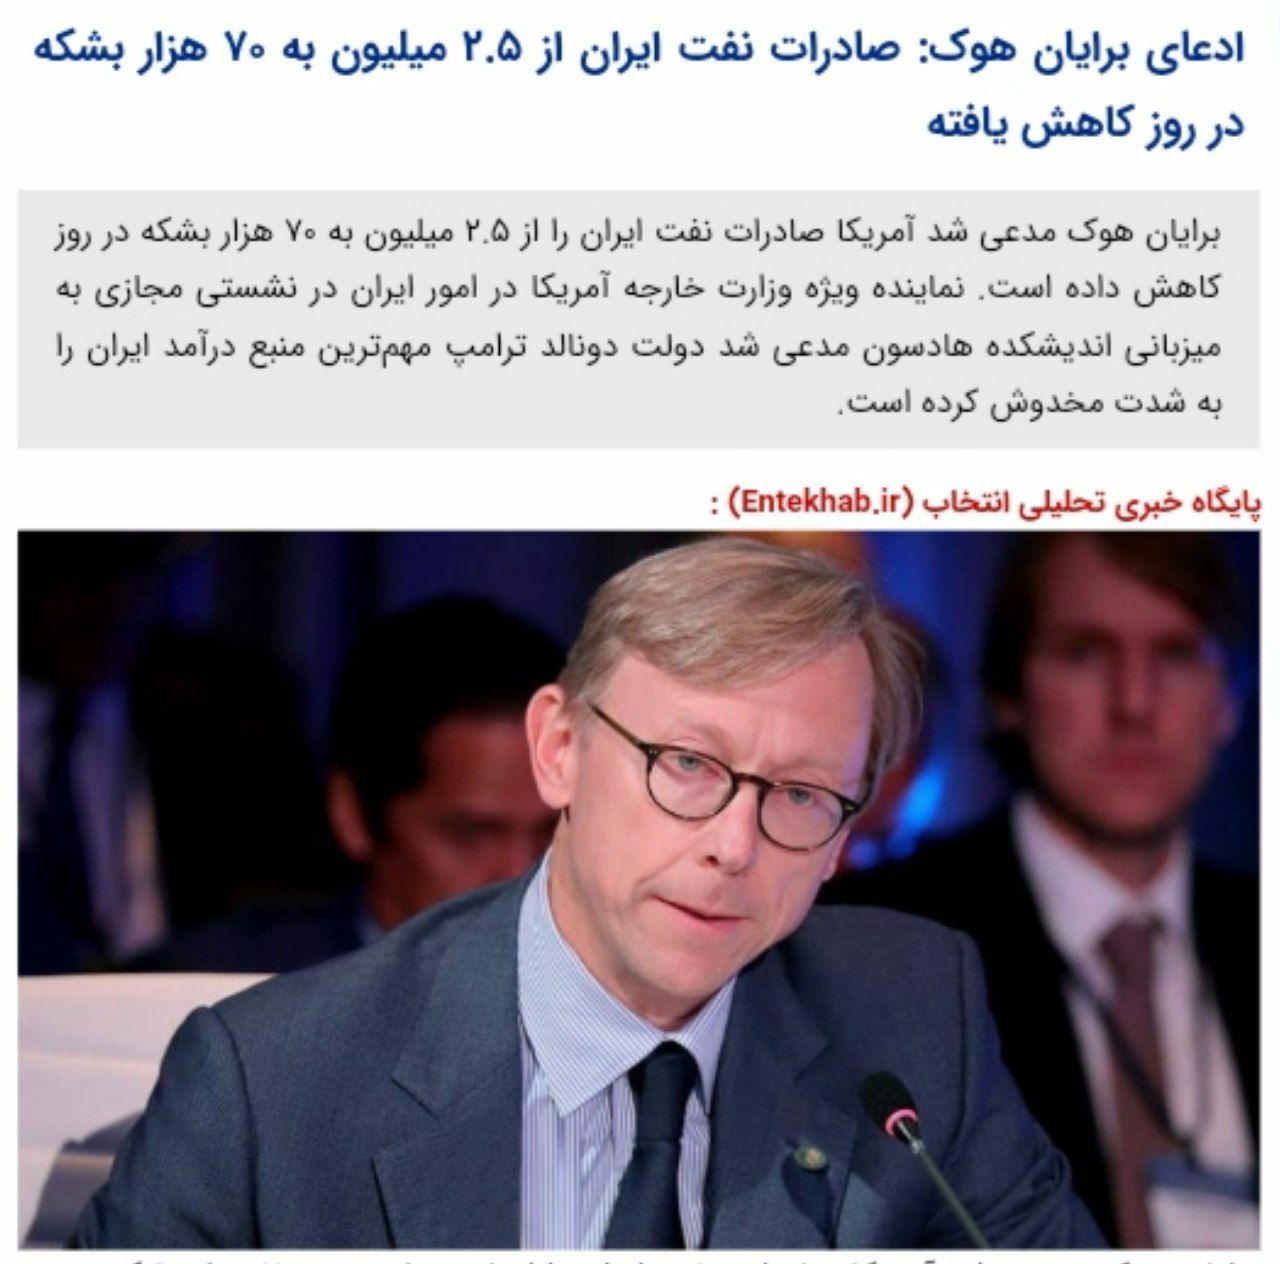 ️ادعای برایان هوک: صادرات نفت ایران از ۲.۵ میلیون به ۷۰ هزار بشکه در روز کاهش یافته